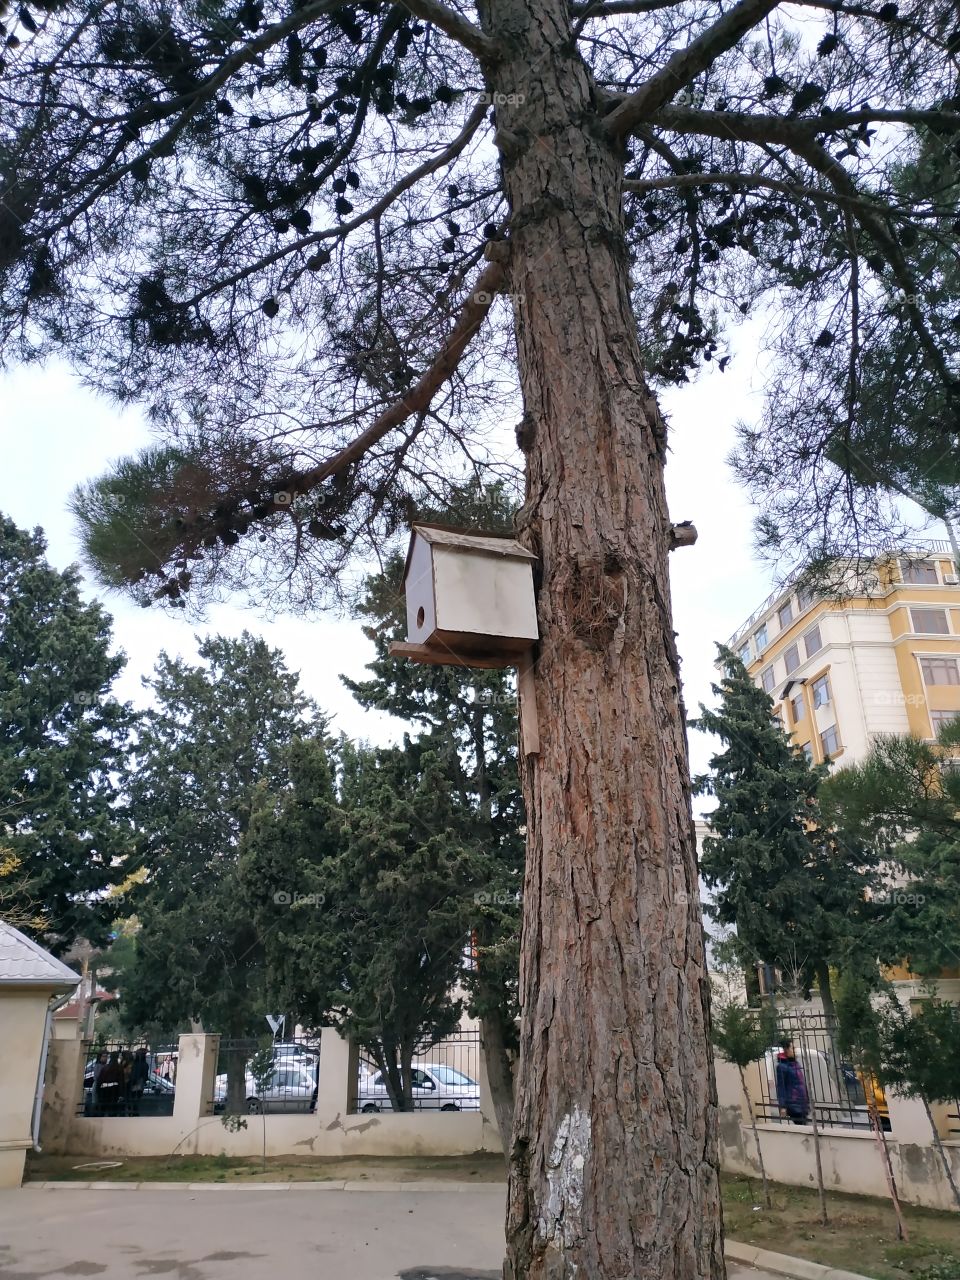 nesting box